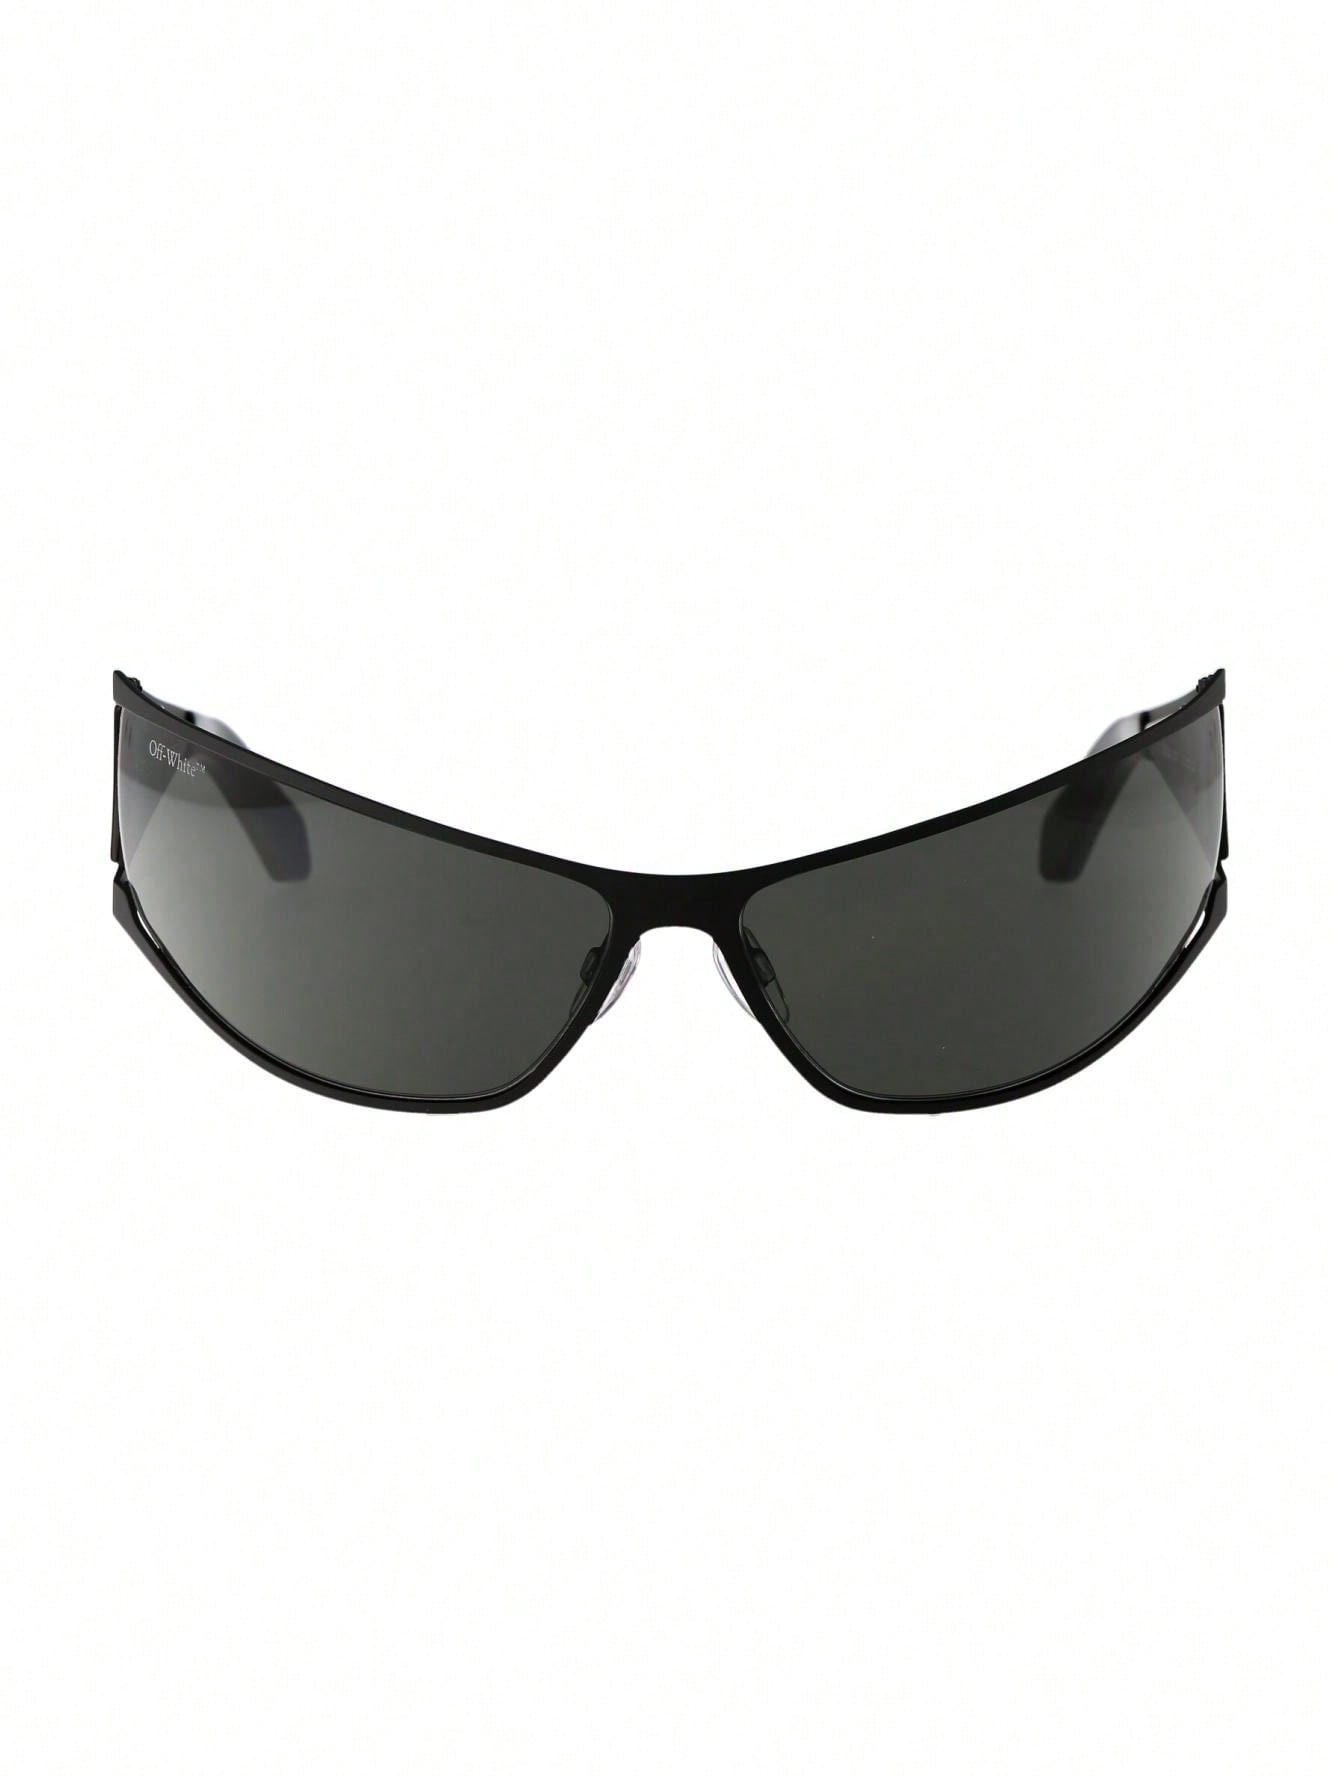 мужские солнцезащитные очки off white черные oeri094f23pla0010107 черный Мужские солнцезащитные очки Off-White ЧЕРНЫЕ OERI102F23MET0011007, черный